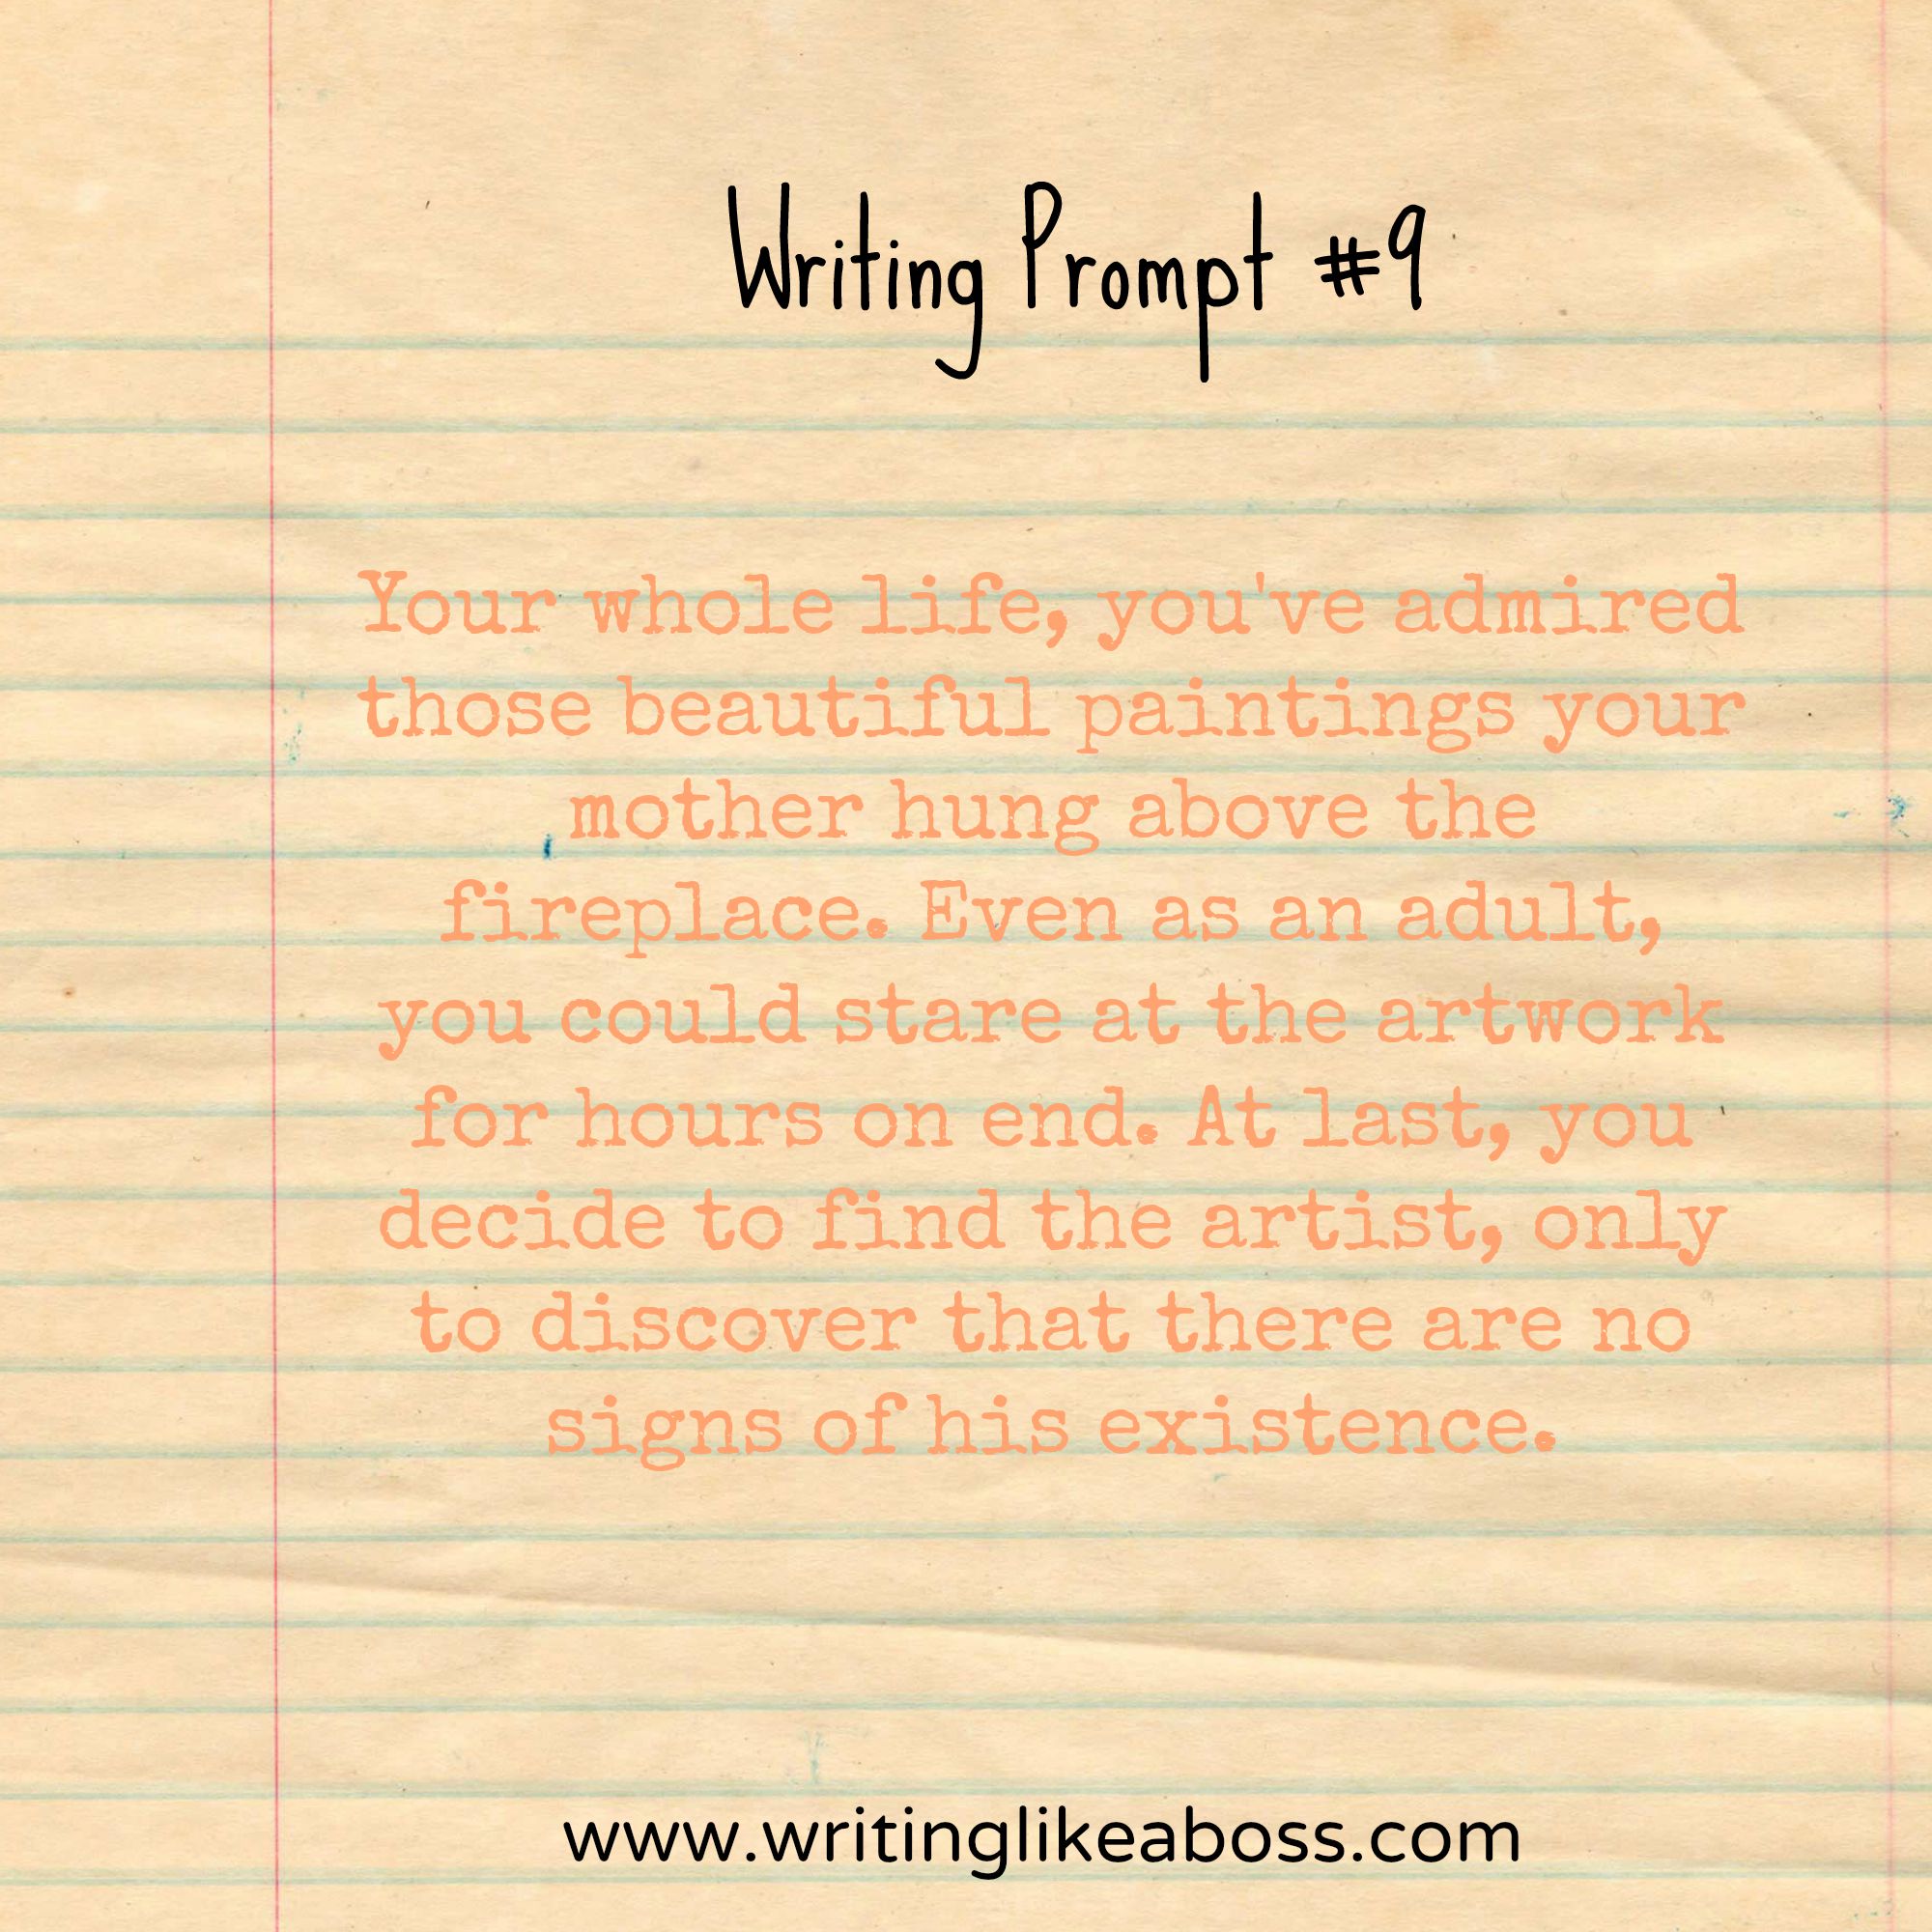 Writing Prompt #9 – writing like a boss